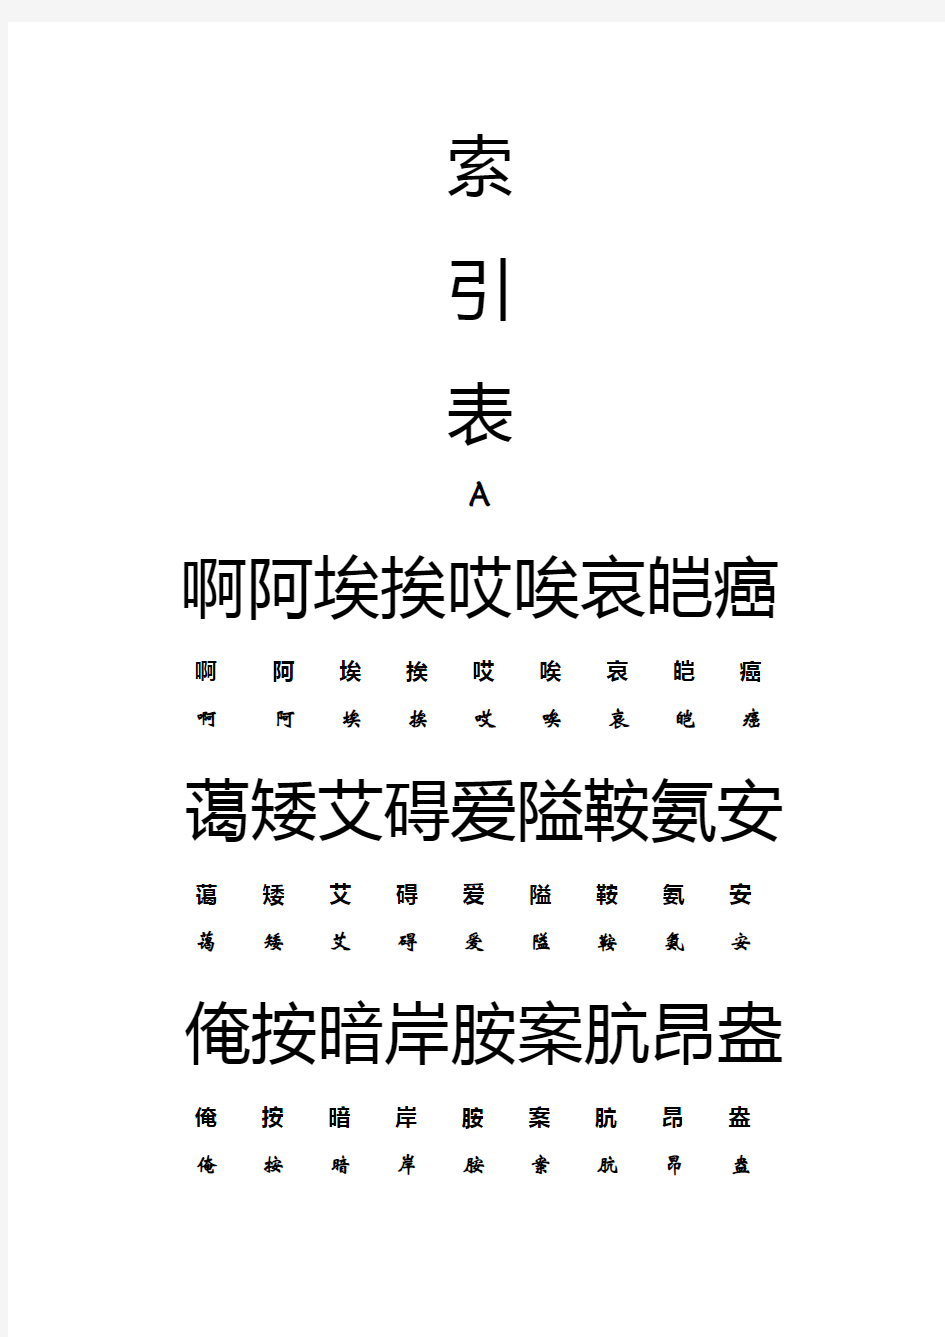 常用汉字-小篆繁体简体转换索引02